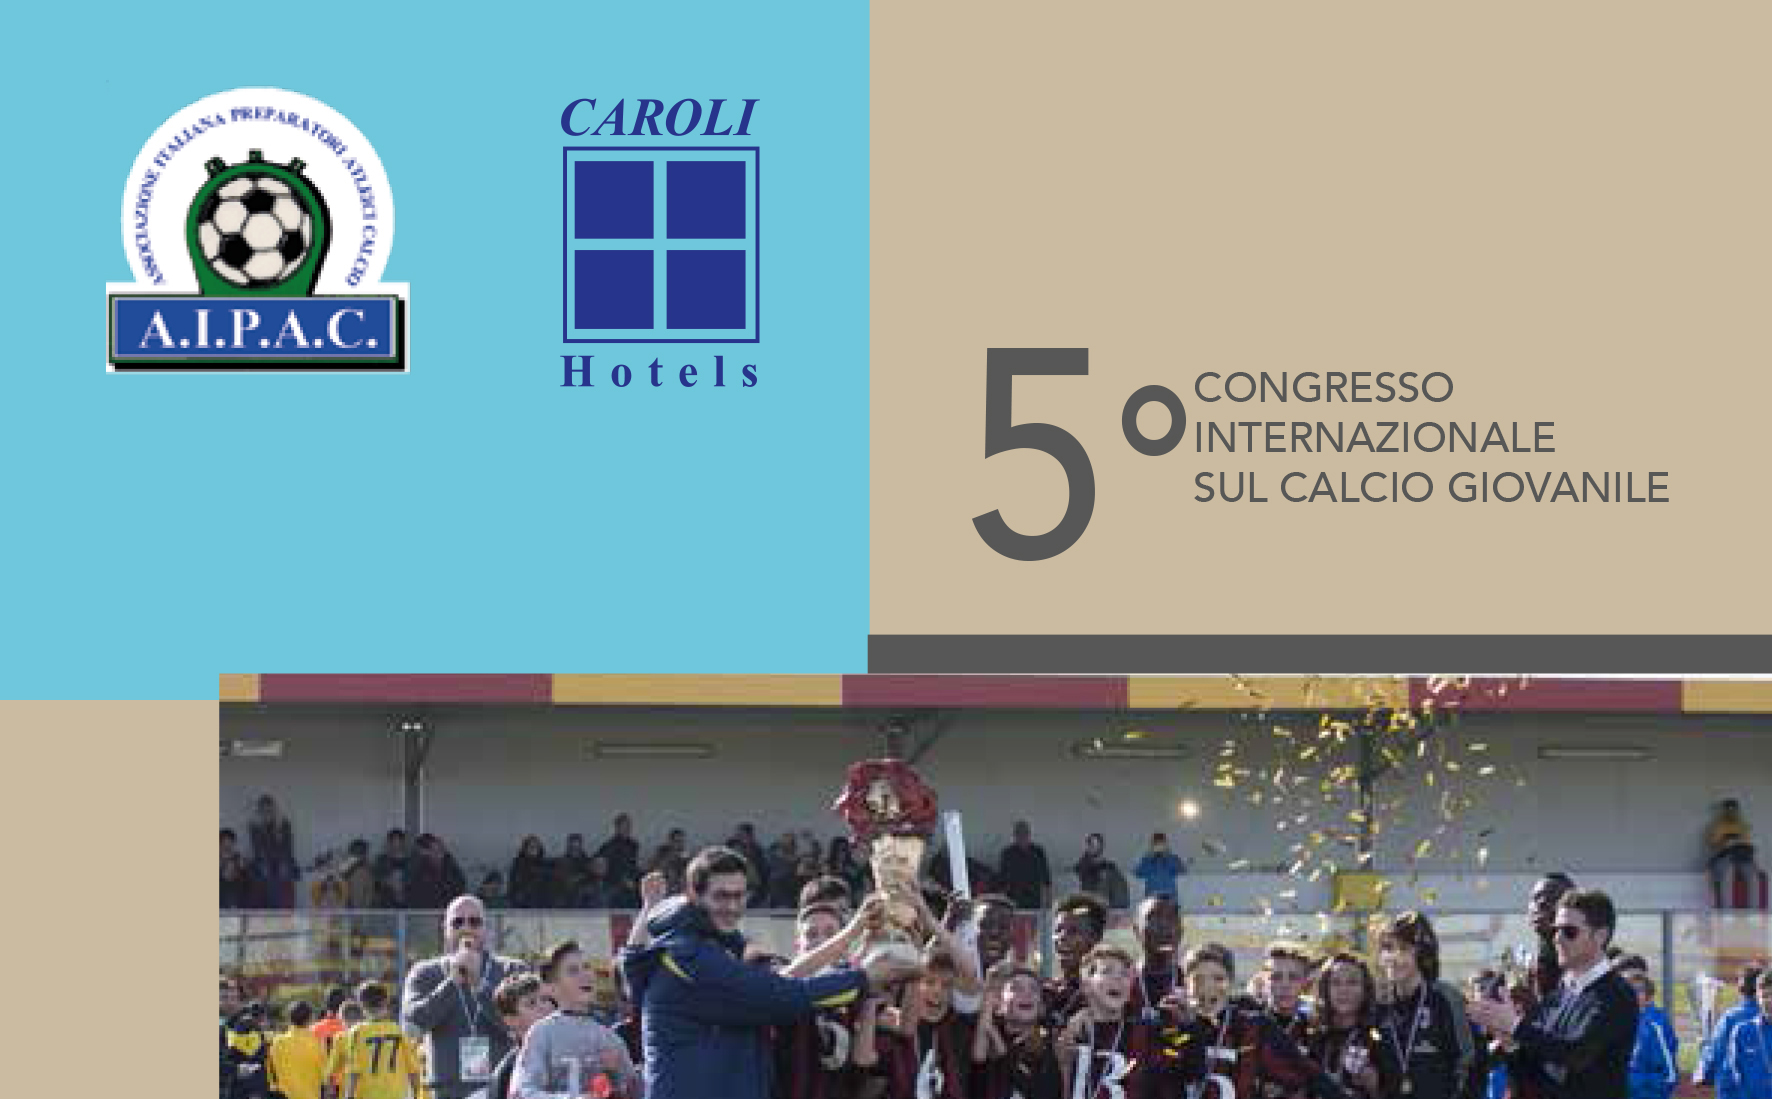 5-congresso-internazionale-sul-calcio-giovanile-sabato-25-febbraio